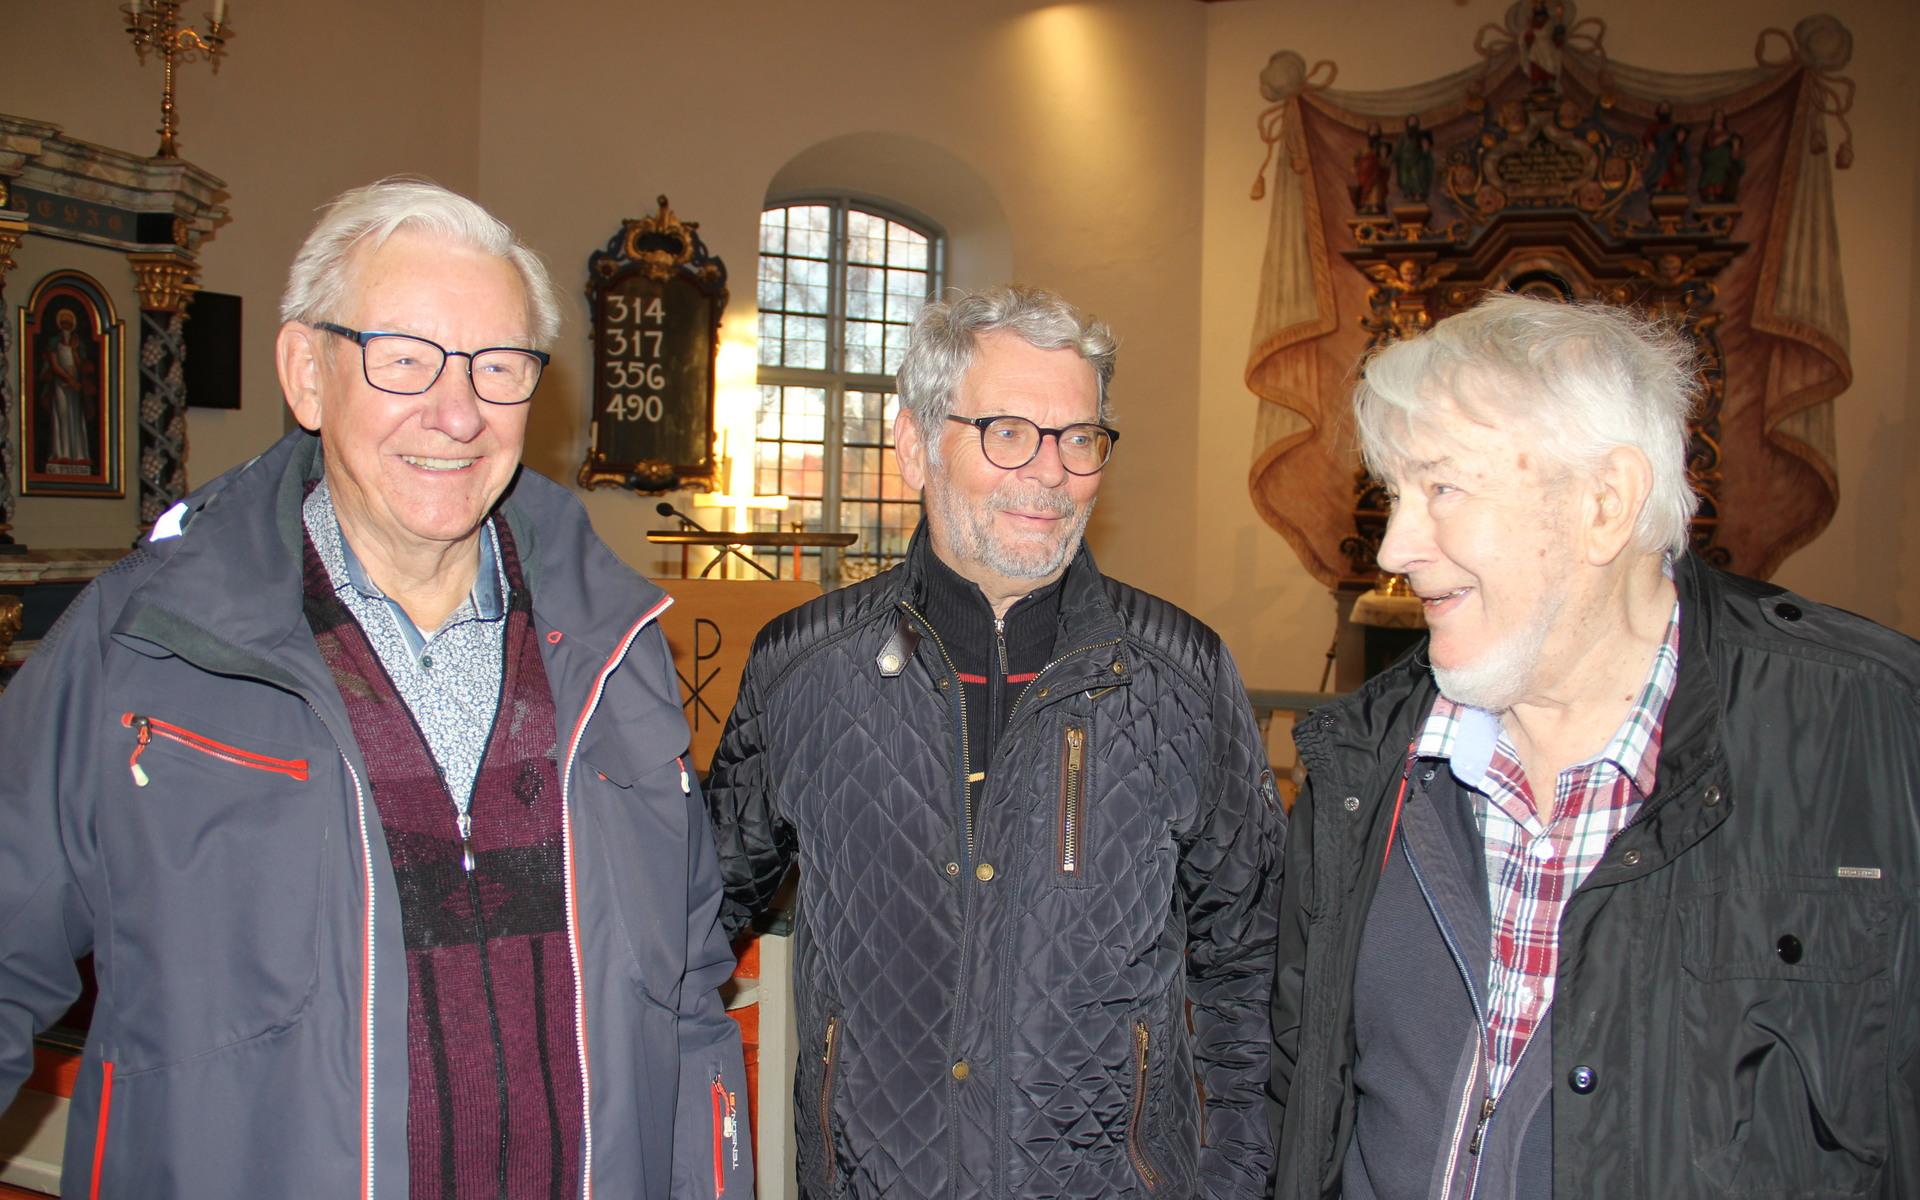 Kurt Jonsson, Åke Gillberg i mitten och Stig Larsson till höger berättar om när Åke Gillbergs farfar råkade sätta eld på kyrkan. Åke Gillbergs farfars far var också vaktmästare i Jörlanda kyrka men själv är han präst till yrket.